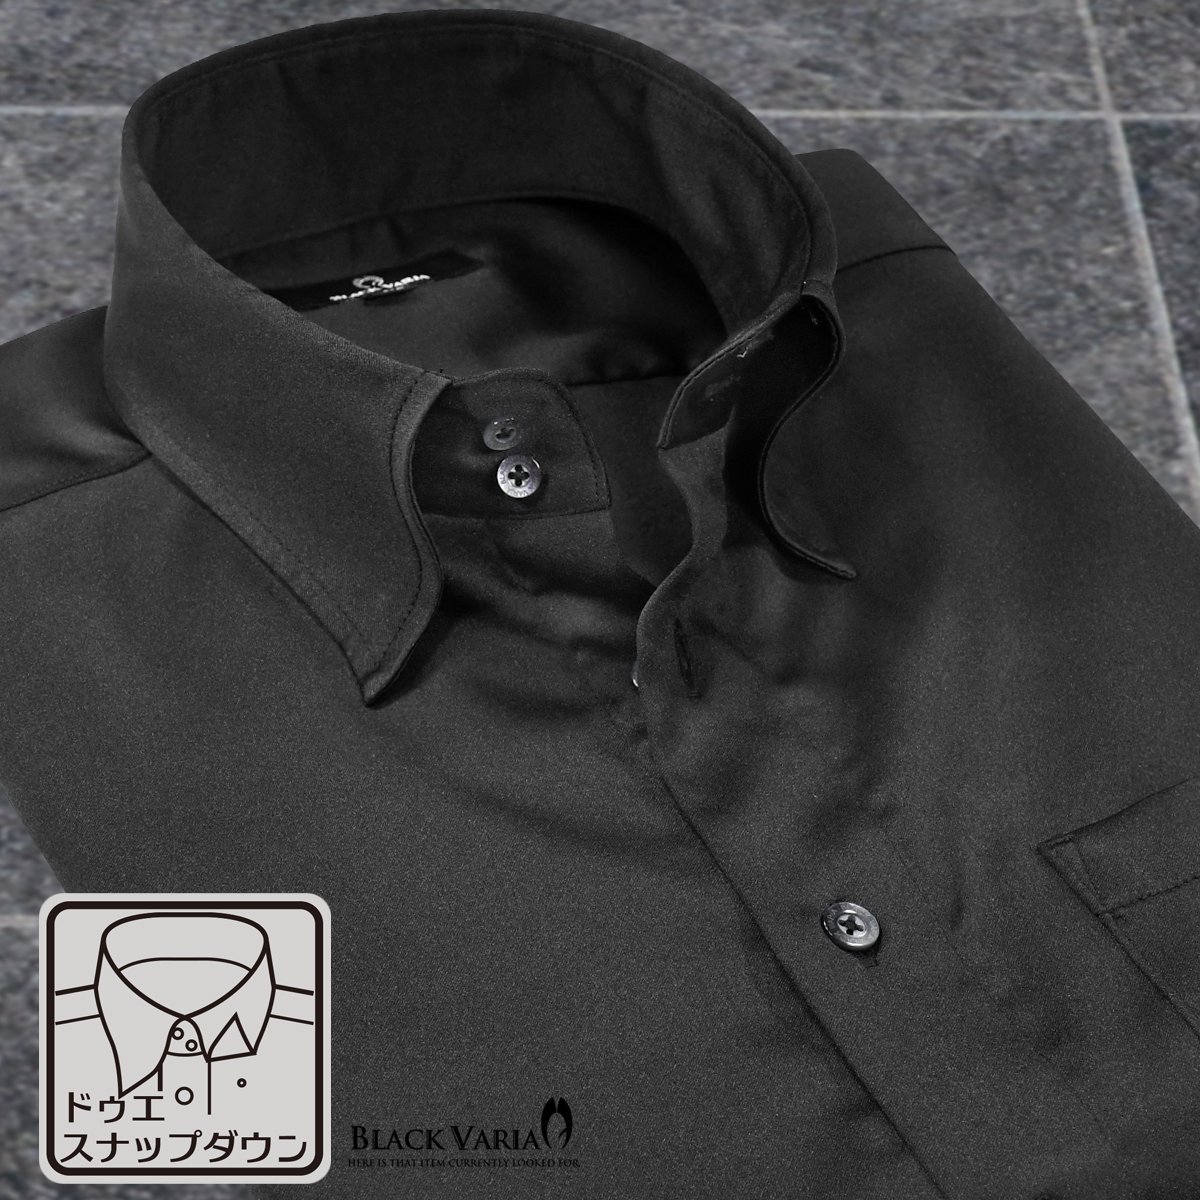 201355-bk BlackVaria 無地 ドゥエボットーニ パウダーサテン ドレスシャツ スナップダウン メンズ(ブラック黒) M きれいめ パーティーの画像1